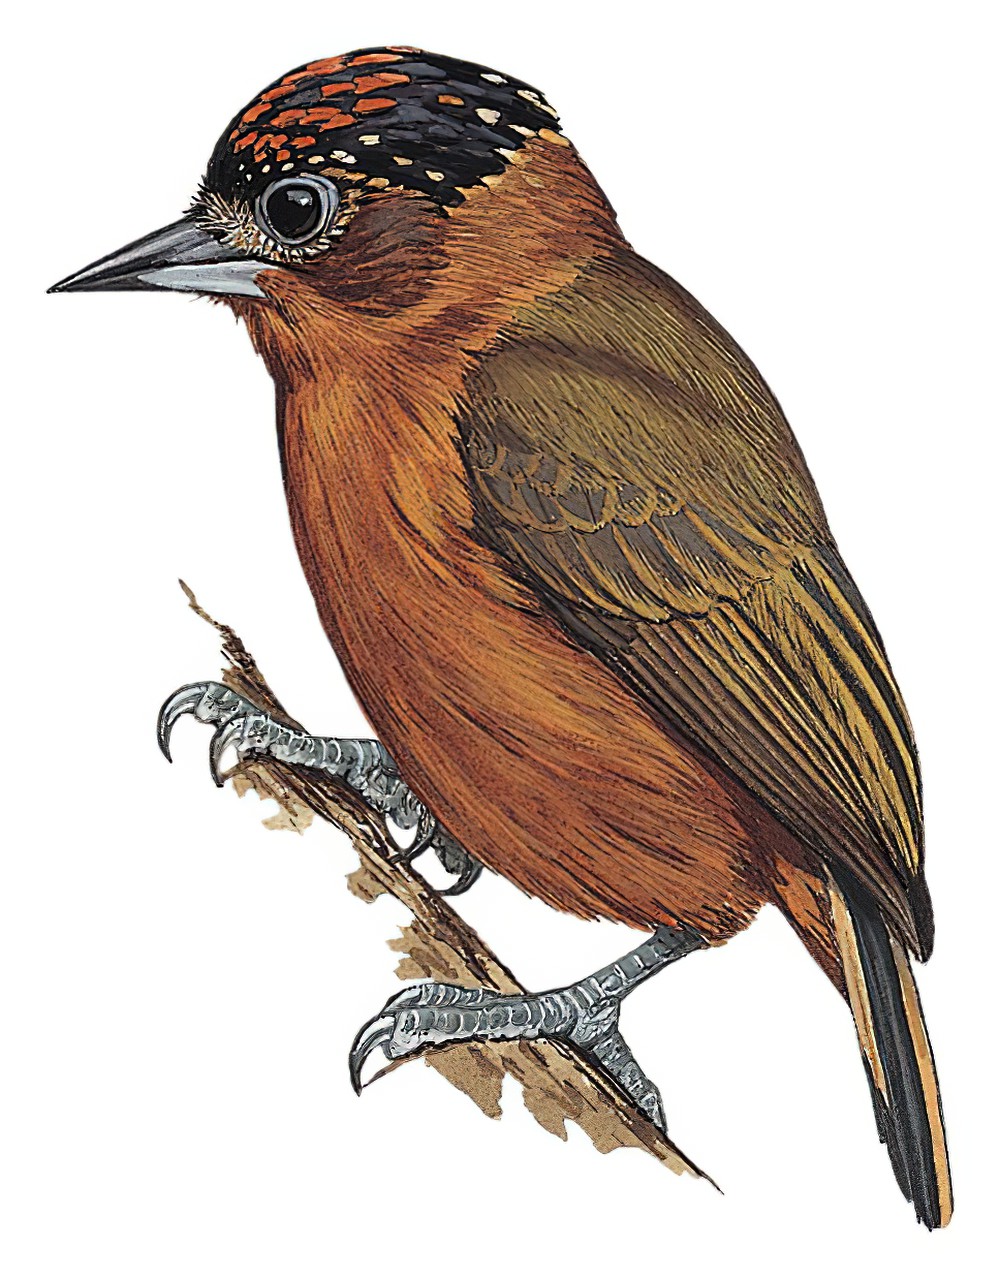 棕胸姬啄木鸟 / Rufous-breasted Piculet / Picumnus rufiventris